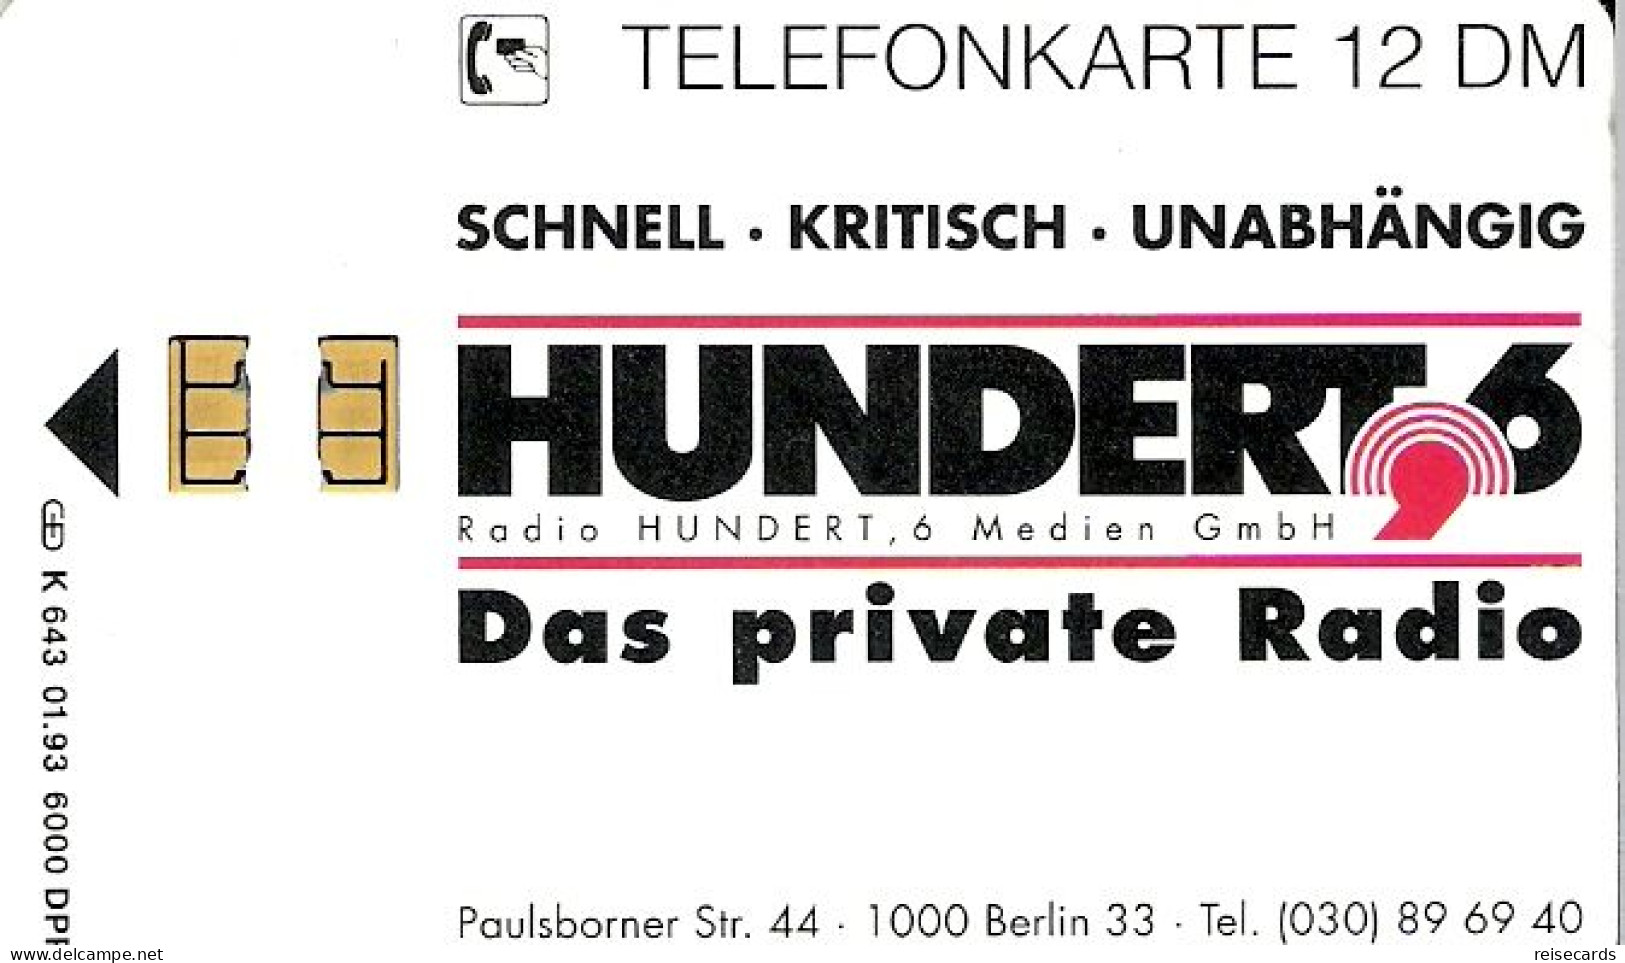 Germany: K 643 01.93 Radio Hundert, 6 Medien GmbH - K-Series: Kundenserie